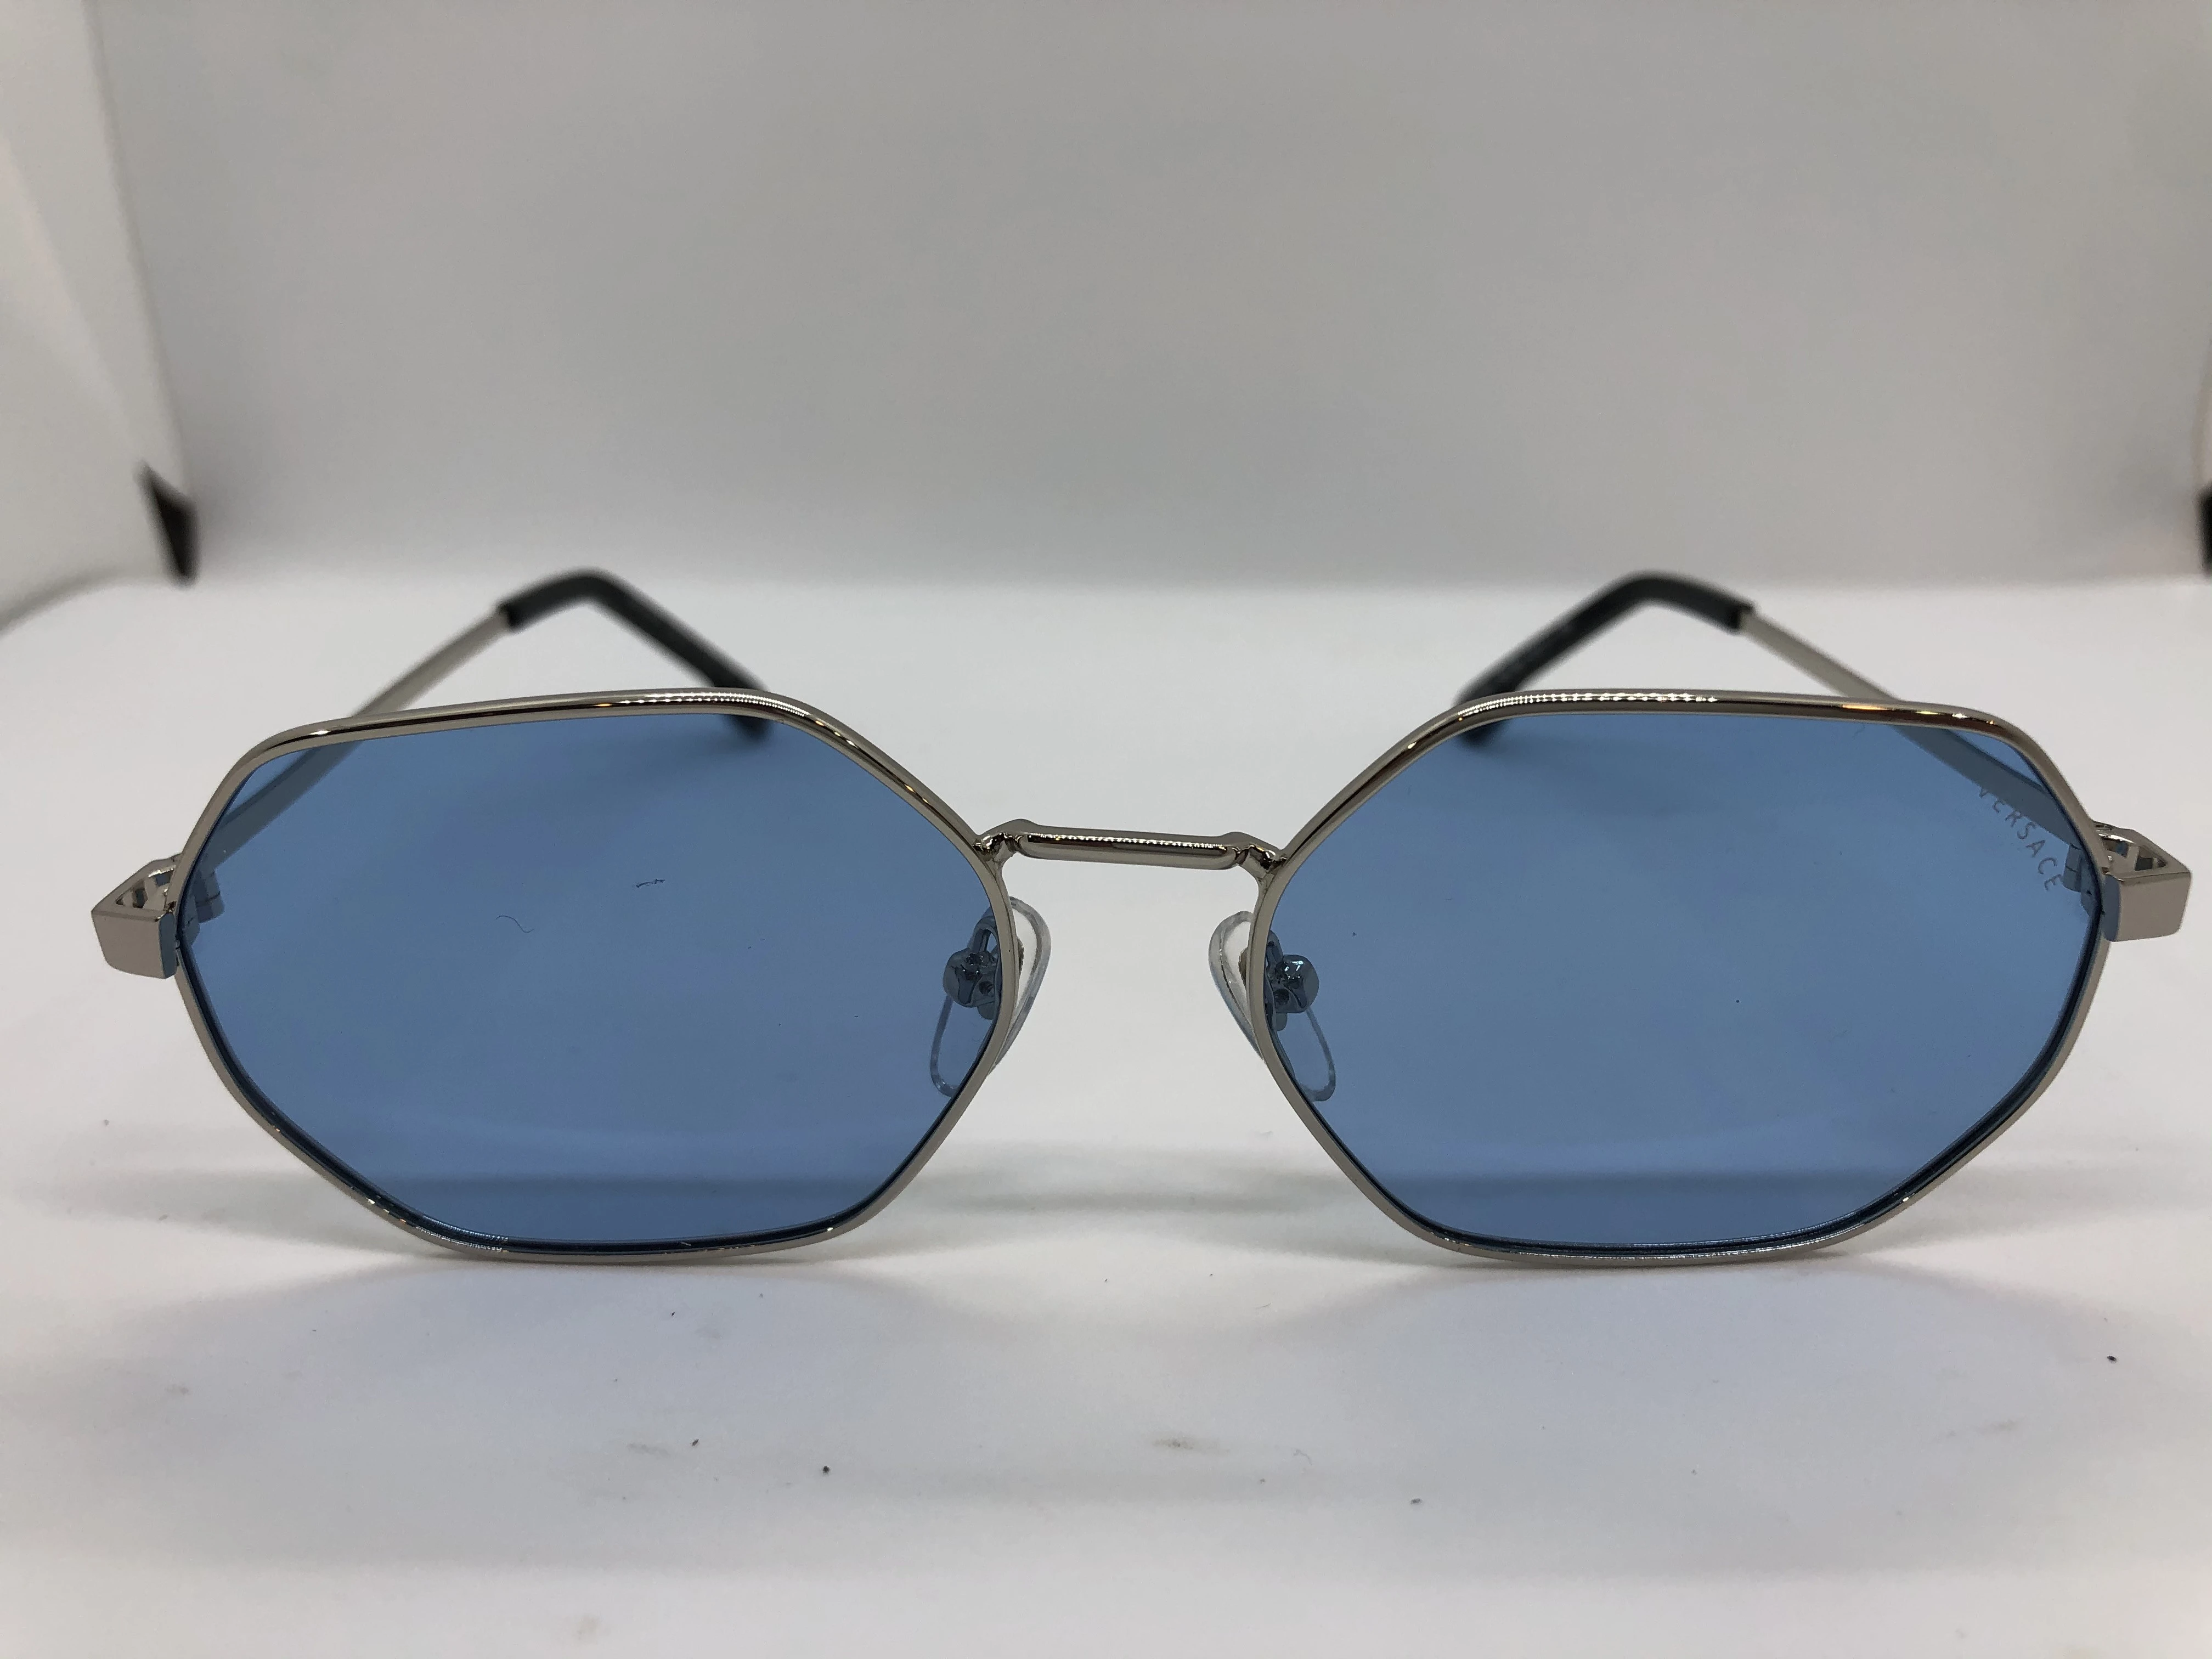 نظارة شمسية - من فيرساتشي - باطار فضي معدن - وعدسات زرقاء - وزراع فضي معدن - رجالي